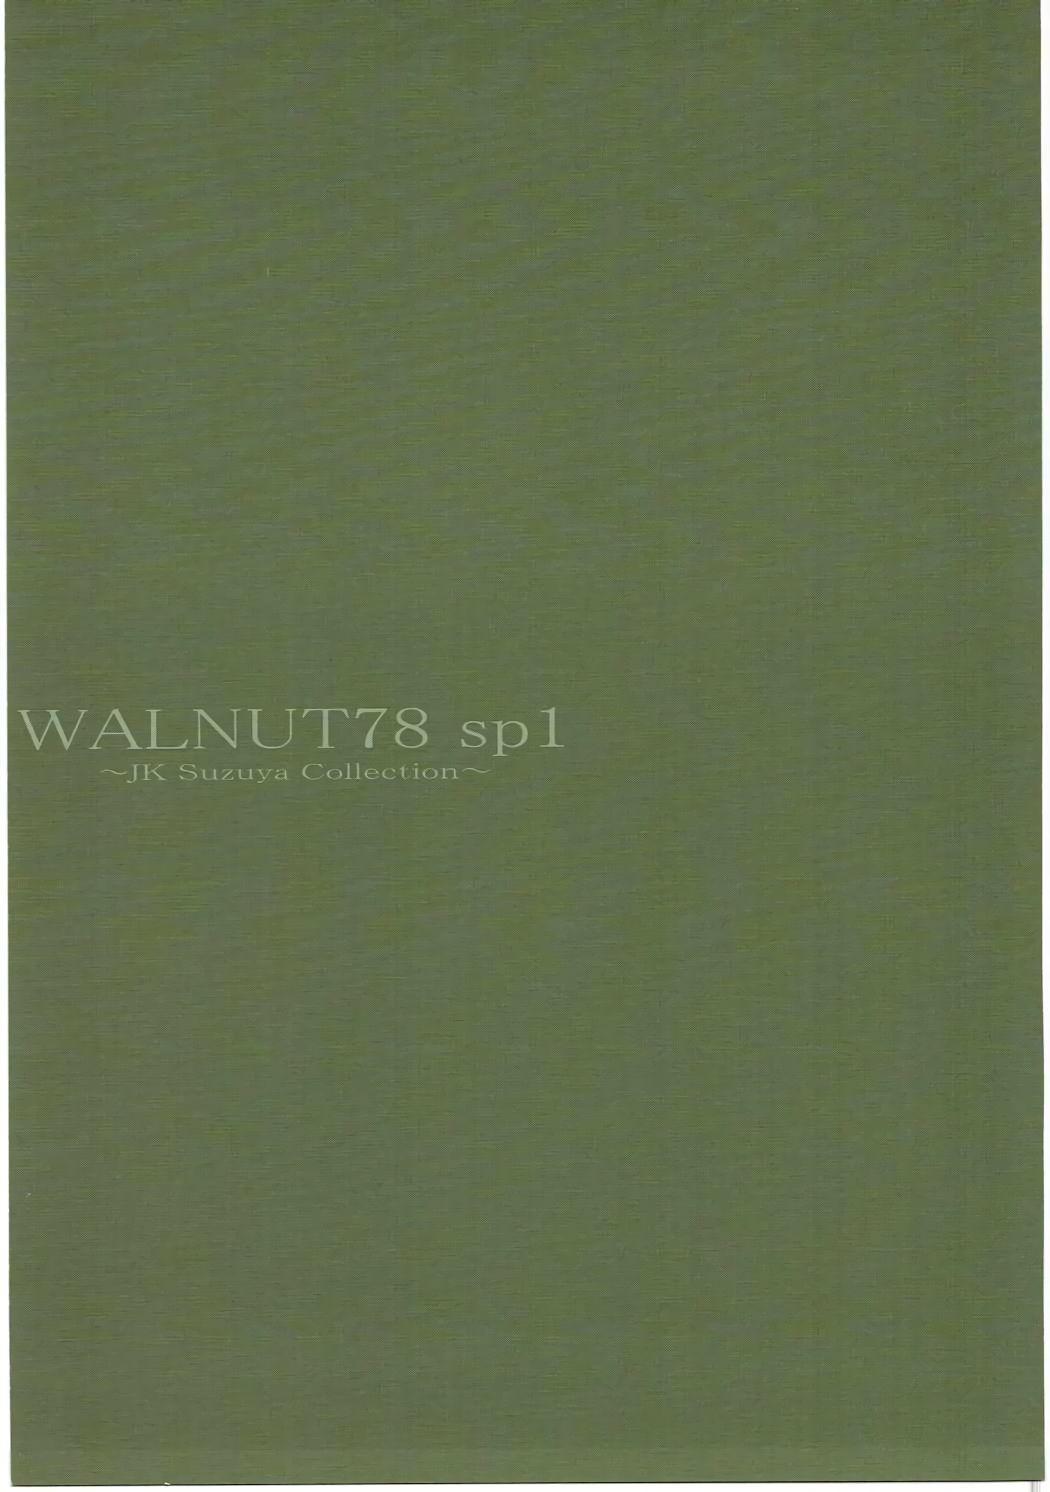 WALNUT78 SP1 1